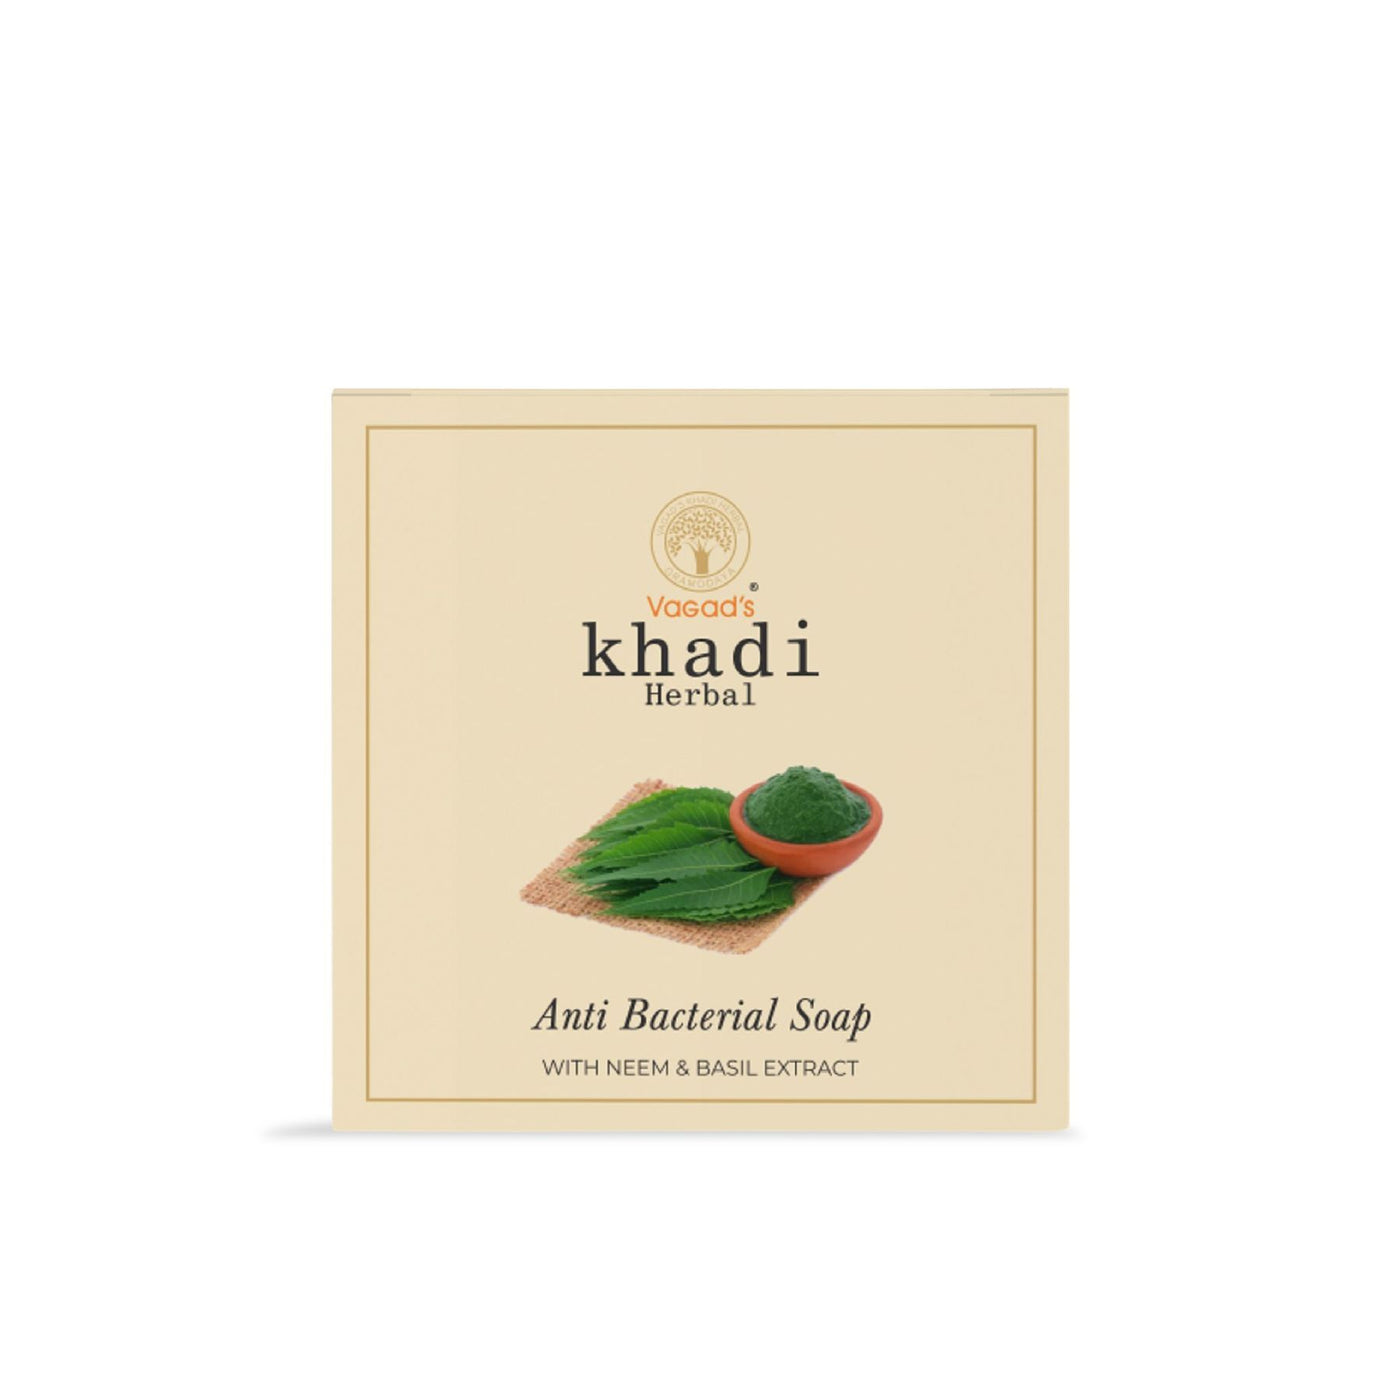 Vagad's Khadi Anti-Bacterial Soap